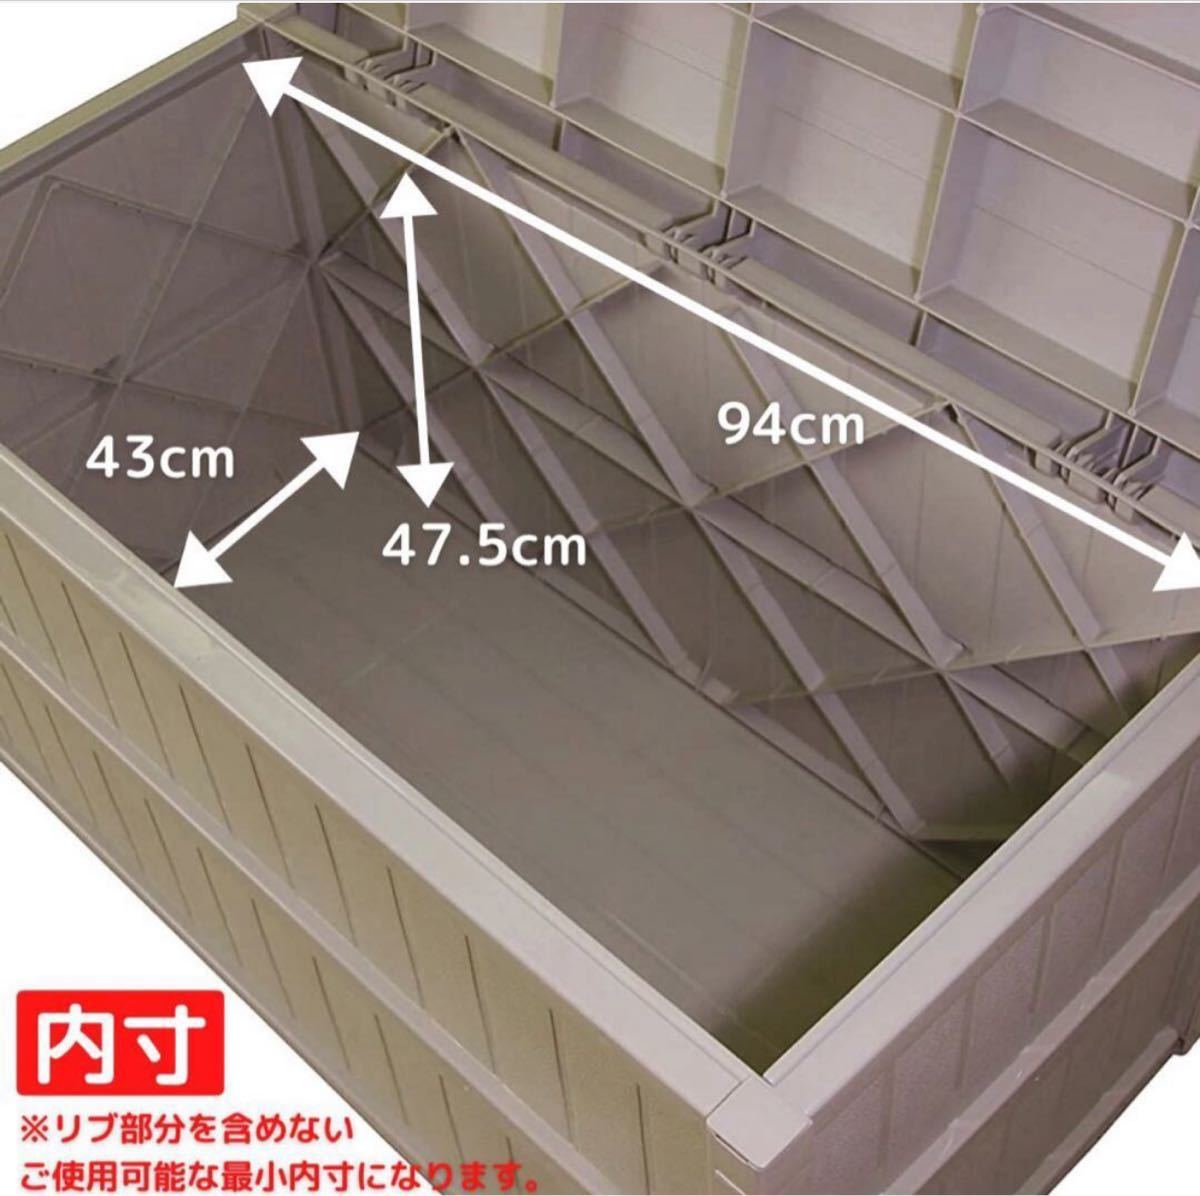 【新品未使用】大容量収納庫 200L 組み立て式 屋外収納ボックス 日本製_画像5